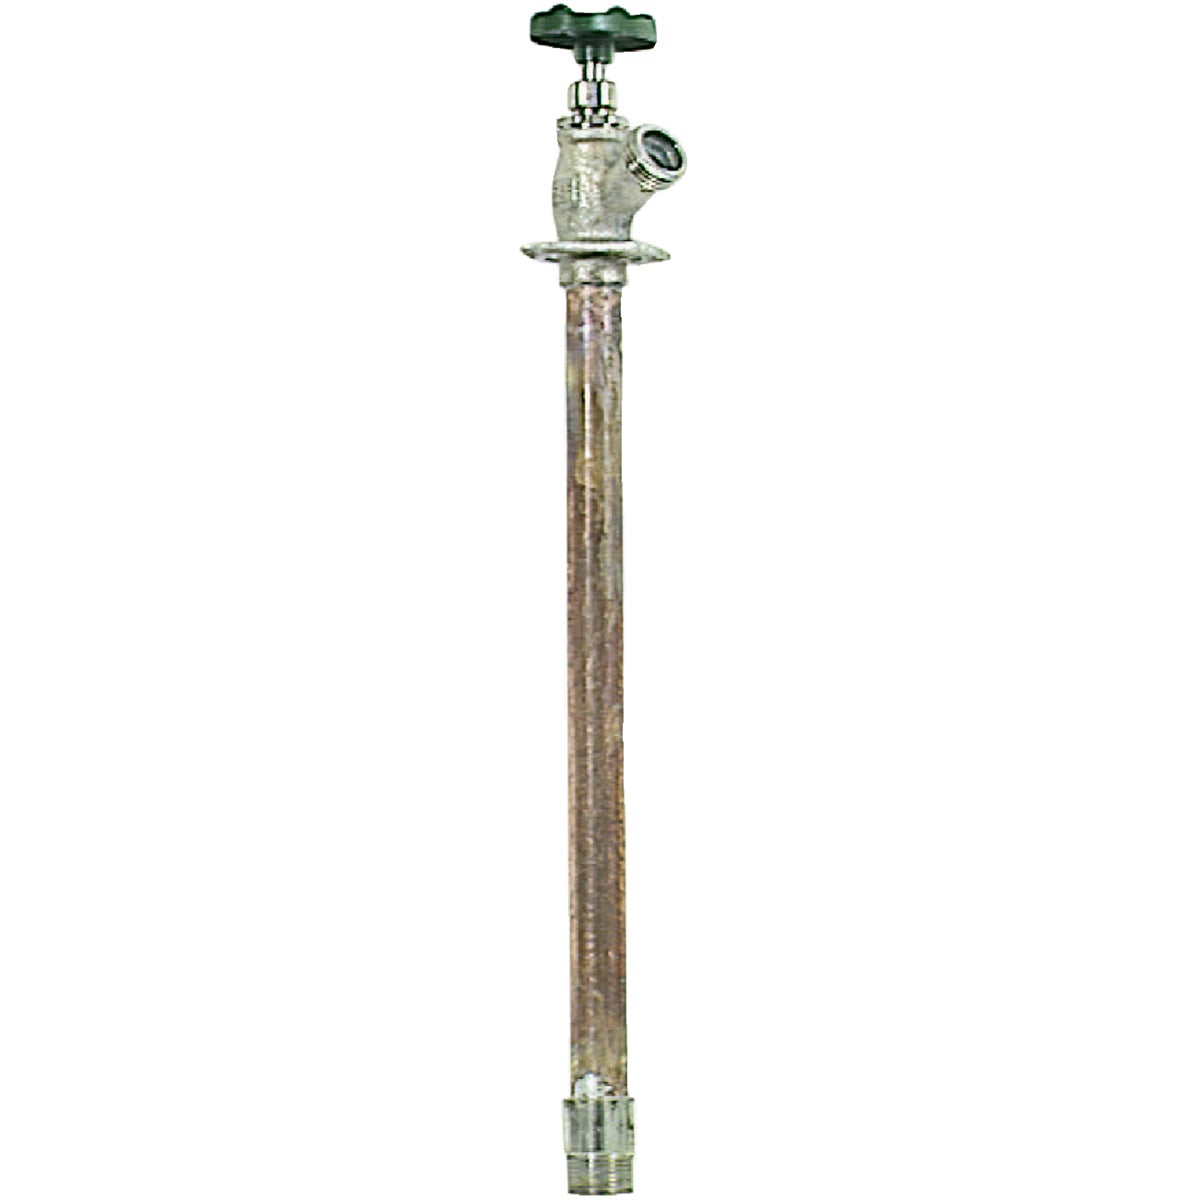 Arrowhead Brass 1/2 In. FIP In. x 3/4 In. MIP x 12 In. Standard Frost Free Wall Hydrant